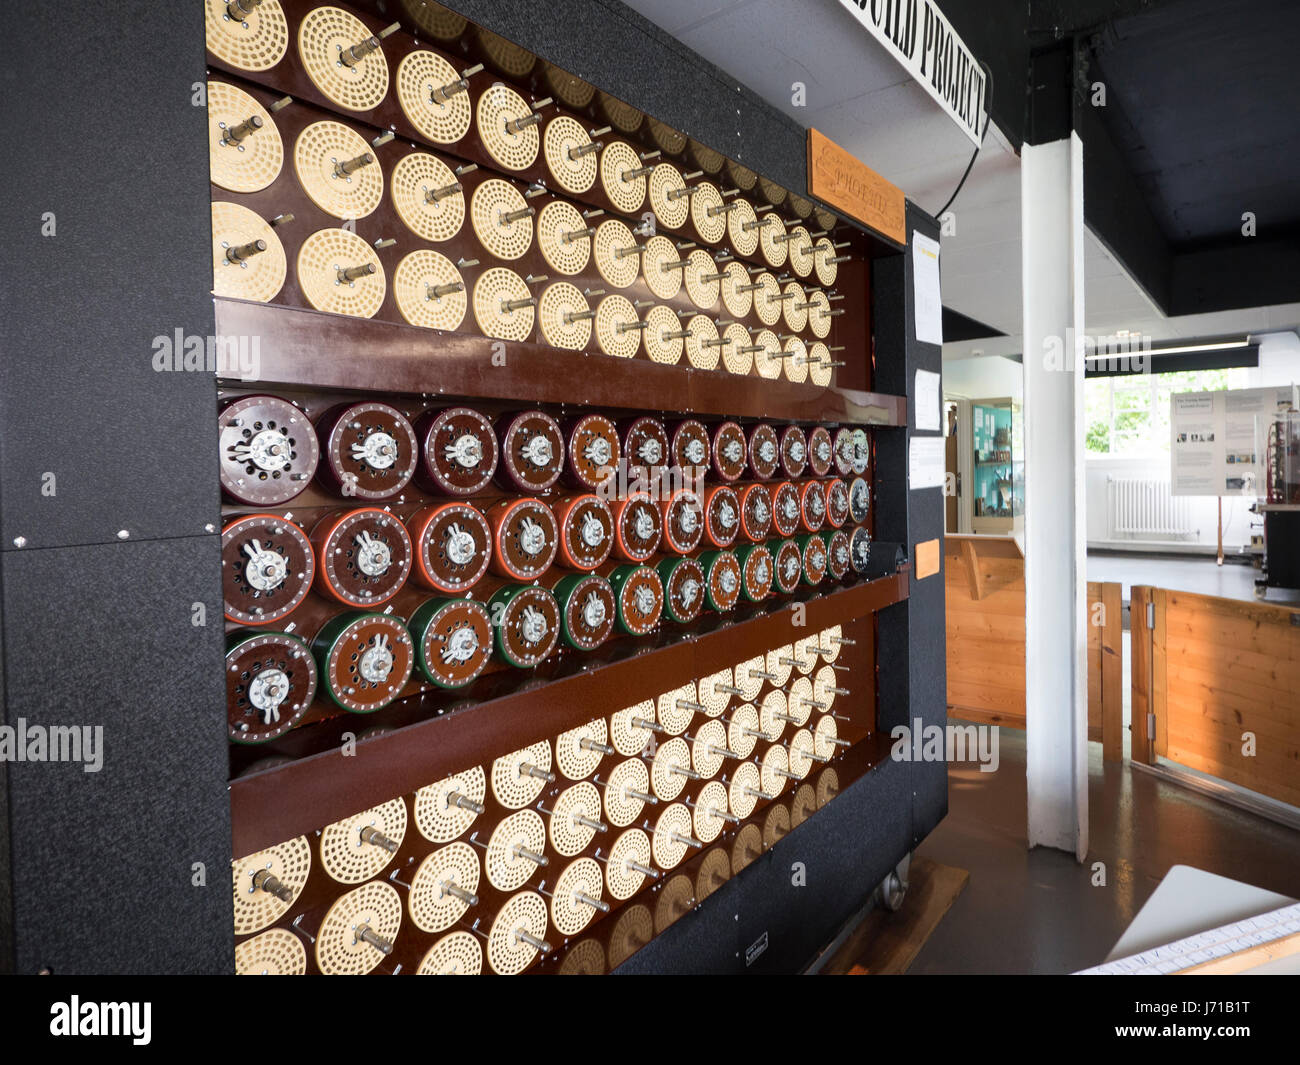 Un groupe de reconstitution de la machine de Turing ou bombe au domicile de l'WWll décrypteurs à Bletchley Park en Angleterre. Banque D'Images